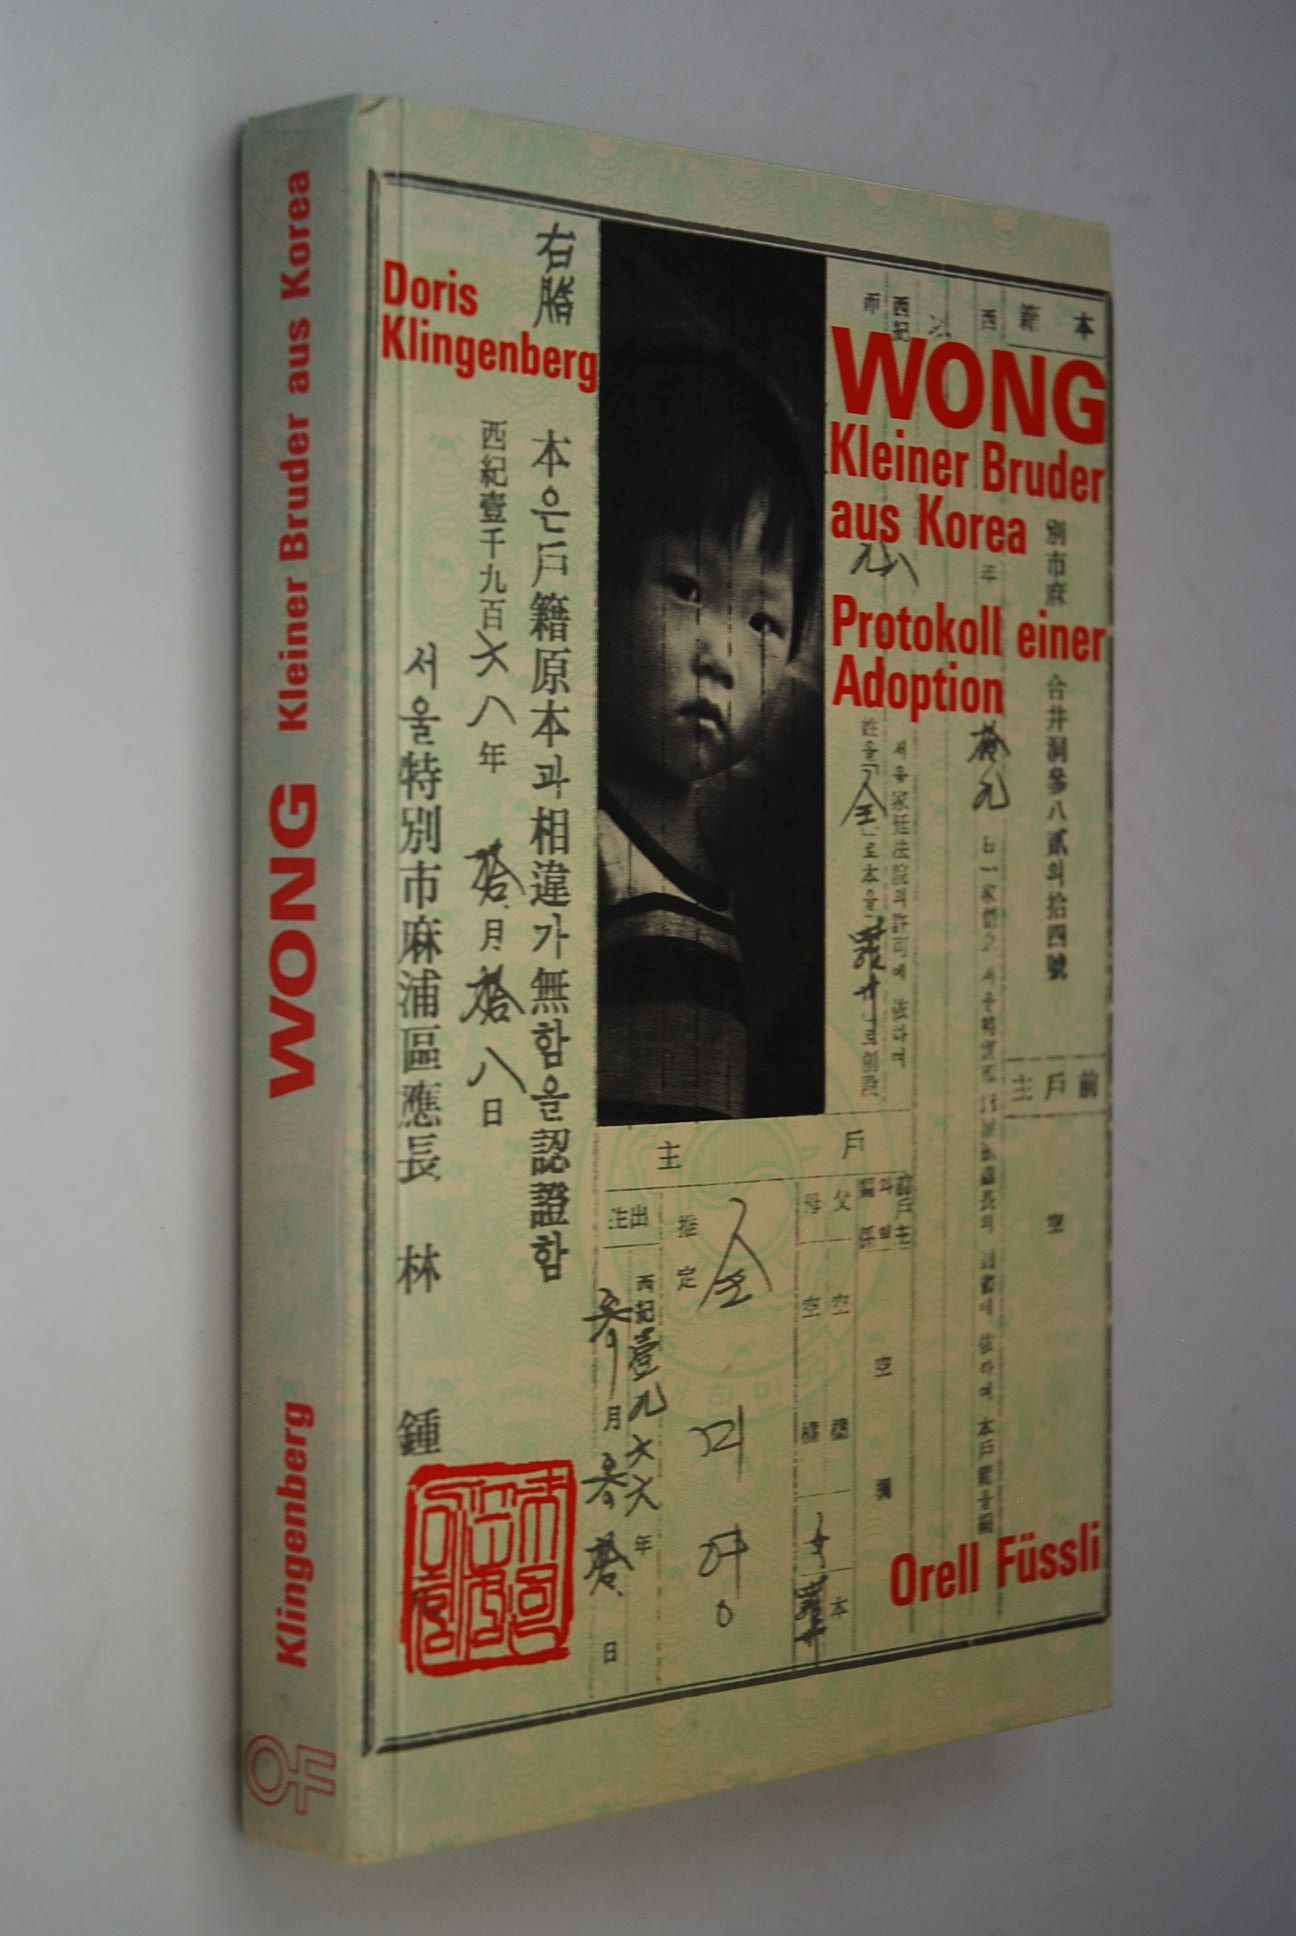 Wong, kleiner Bruder aus Korea: Protokoll einer Adoption. - Klingenberg, Doris